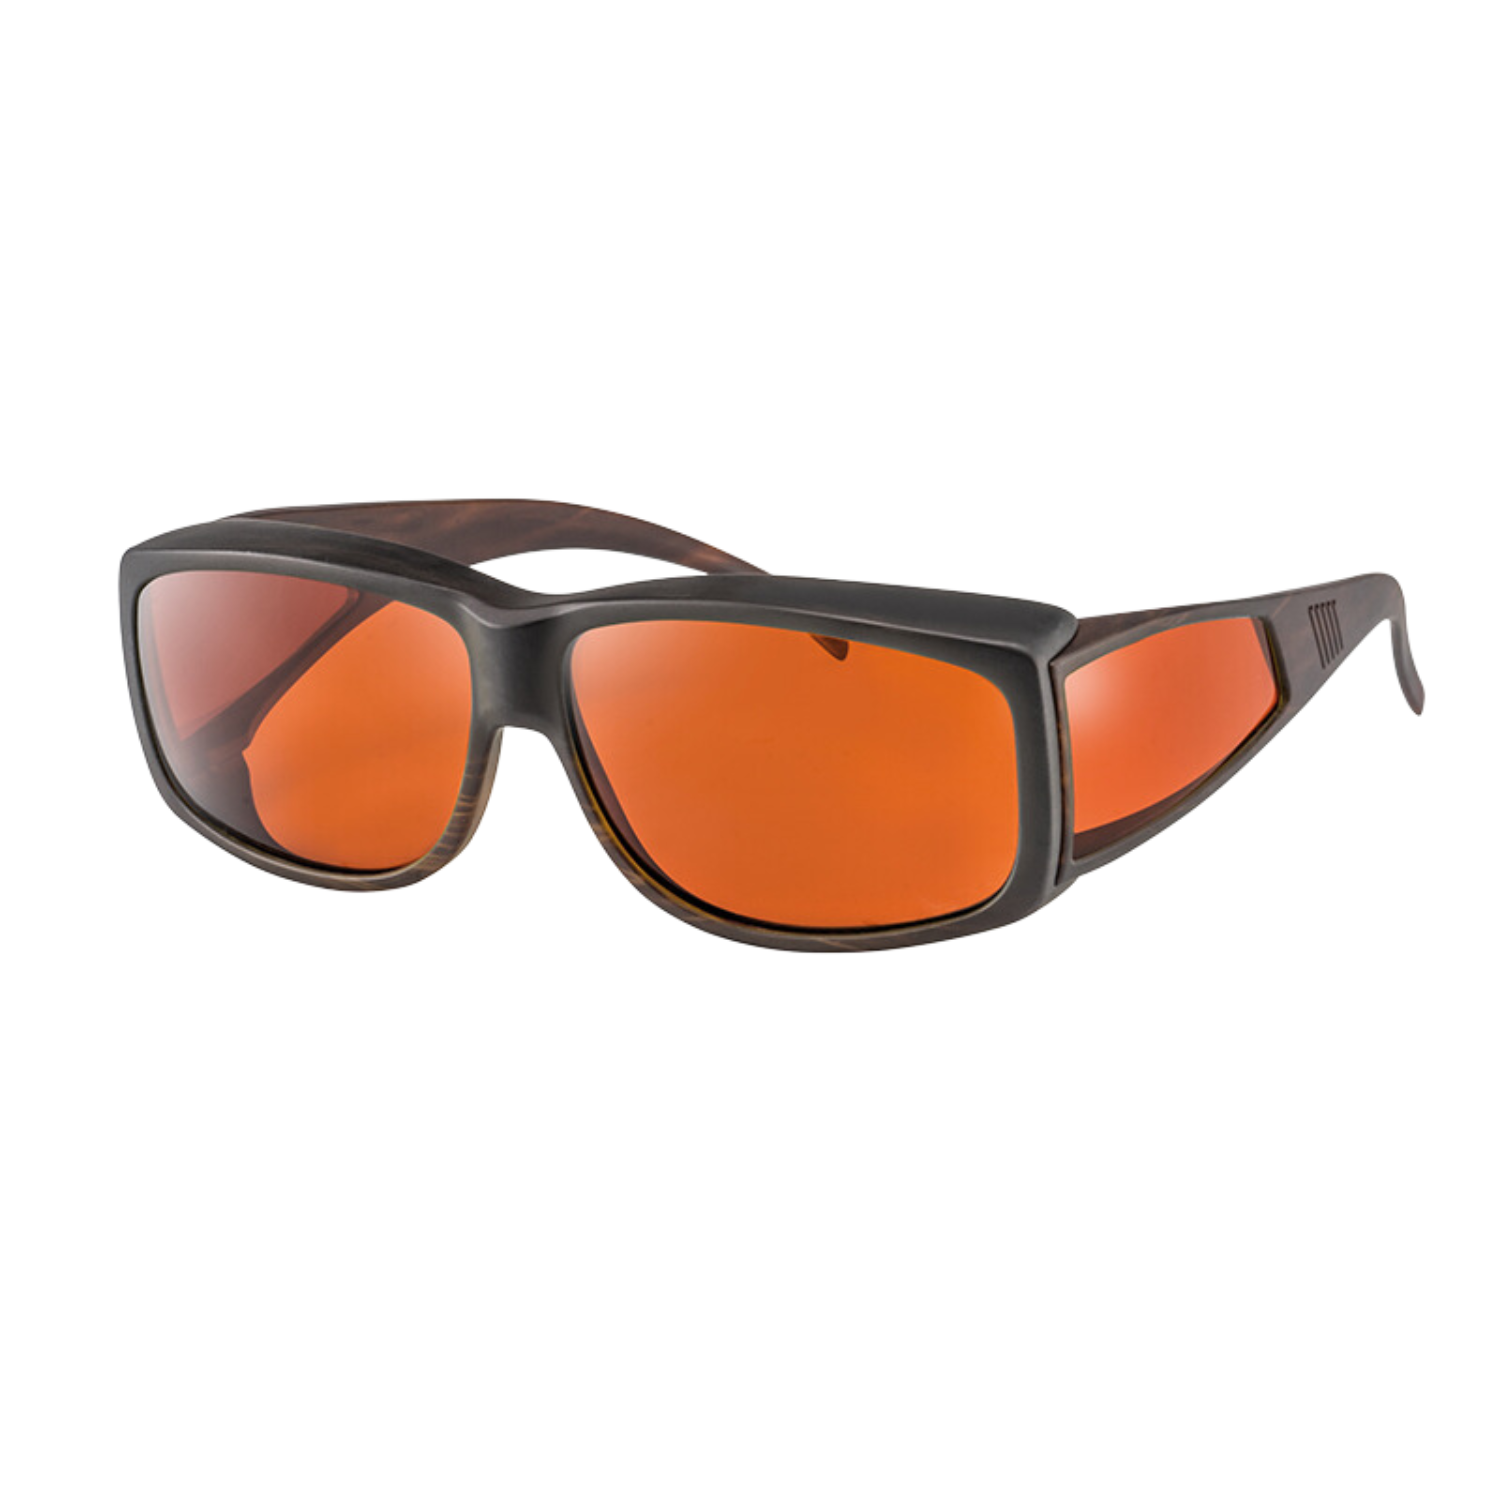 Image of the Asensys XL Blue Light Blocking Sunglasses with Polarized Orange Lenses.